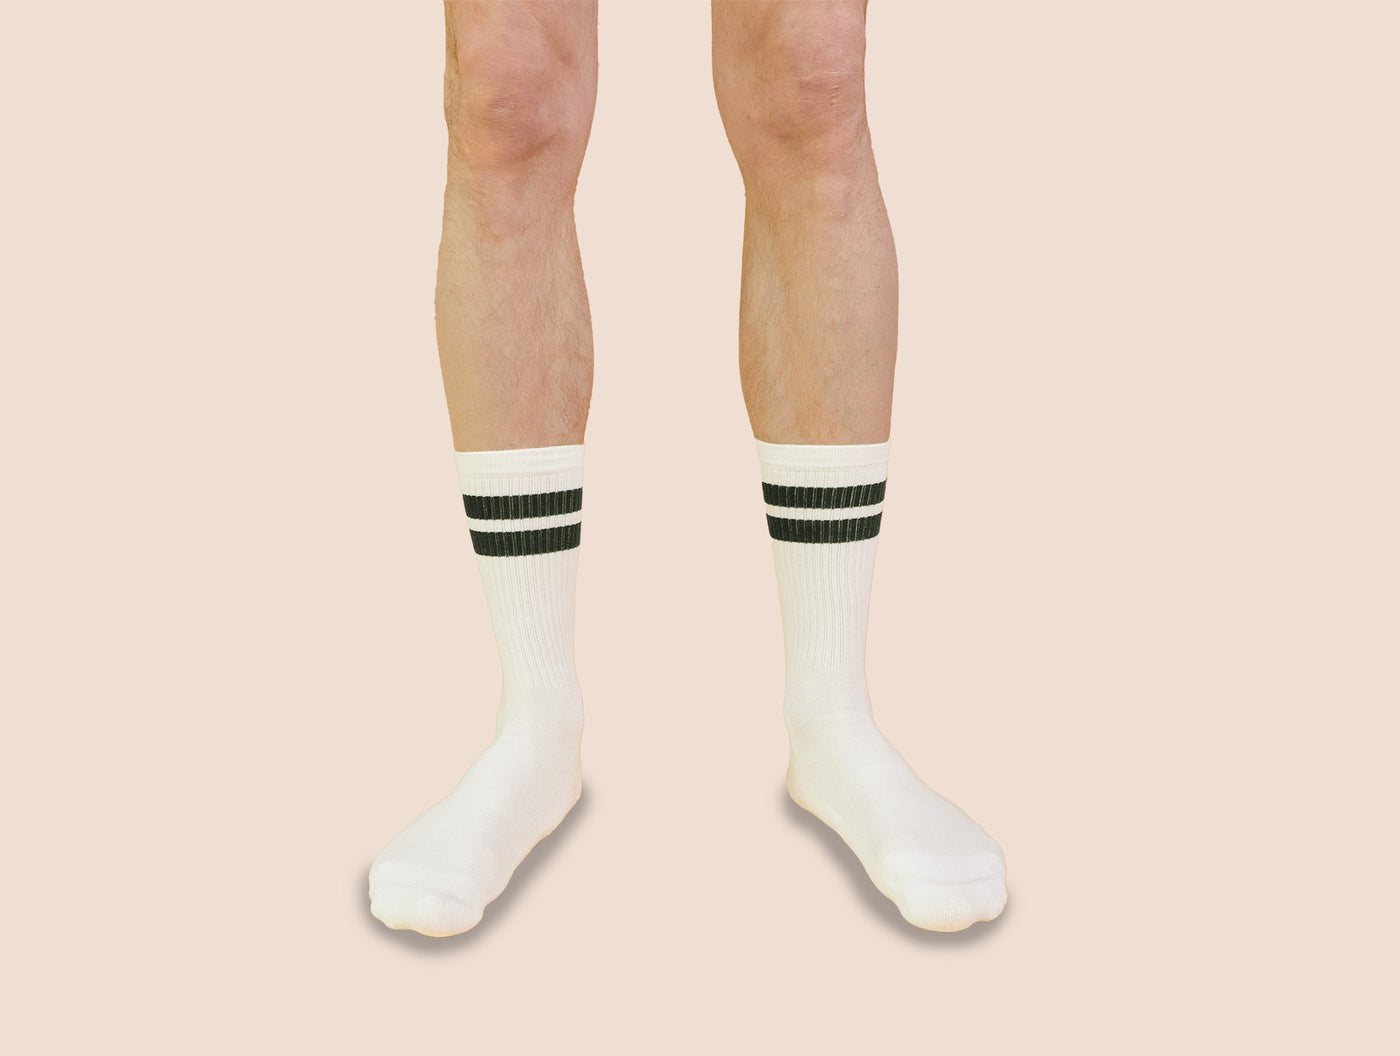 Petrone-chaussettes-tennis-coton-bio-rayures-hautes-homme-écru-vert kaki-portées#Couleur_écru-vert kaki